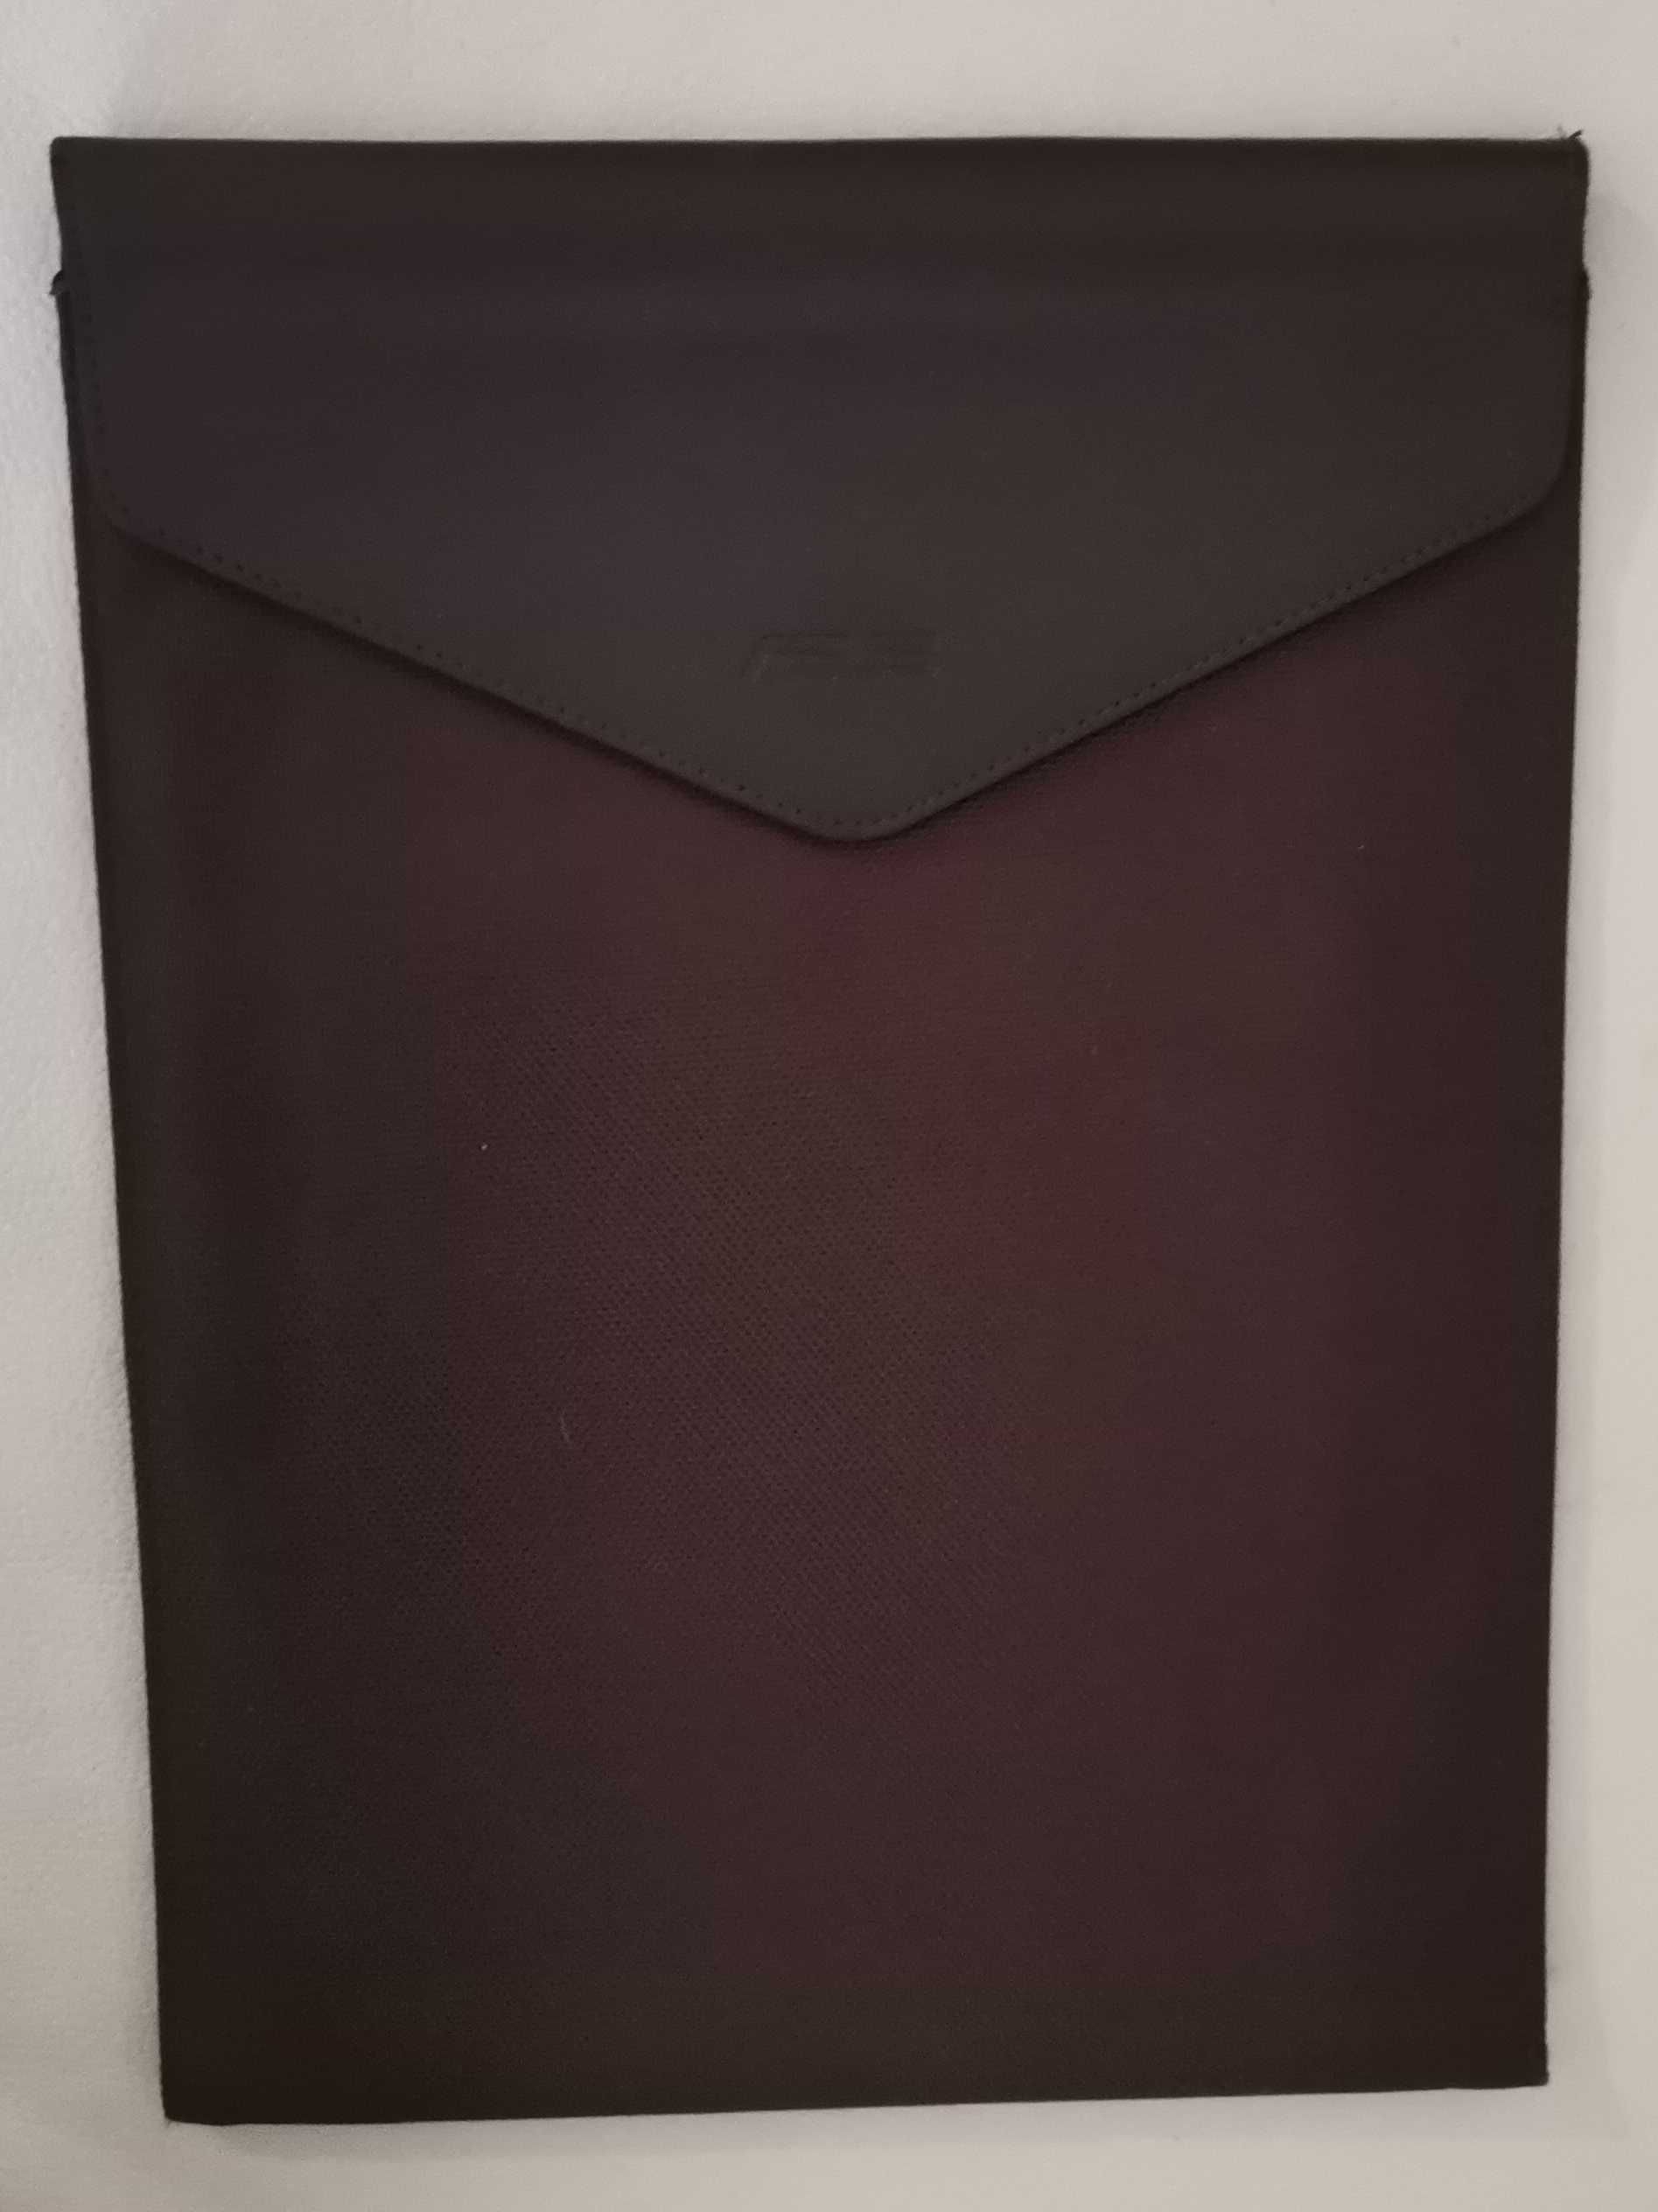 Чехол папка конверт для ноутбука Asus коричневого цвета